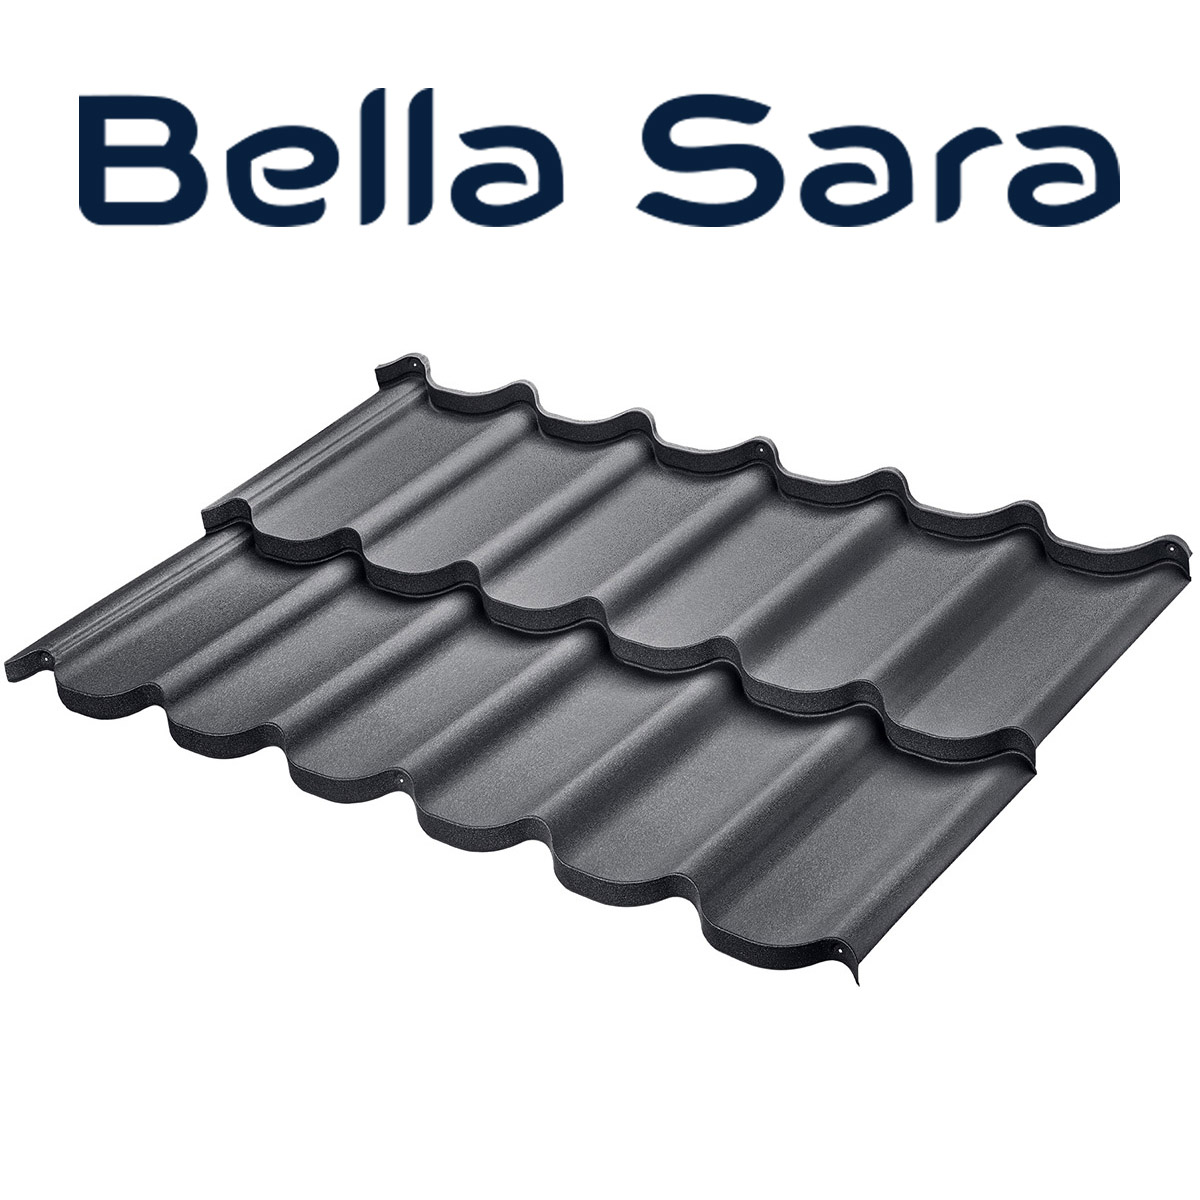 Bella Sara țiglă metalică pentru acoperișuri